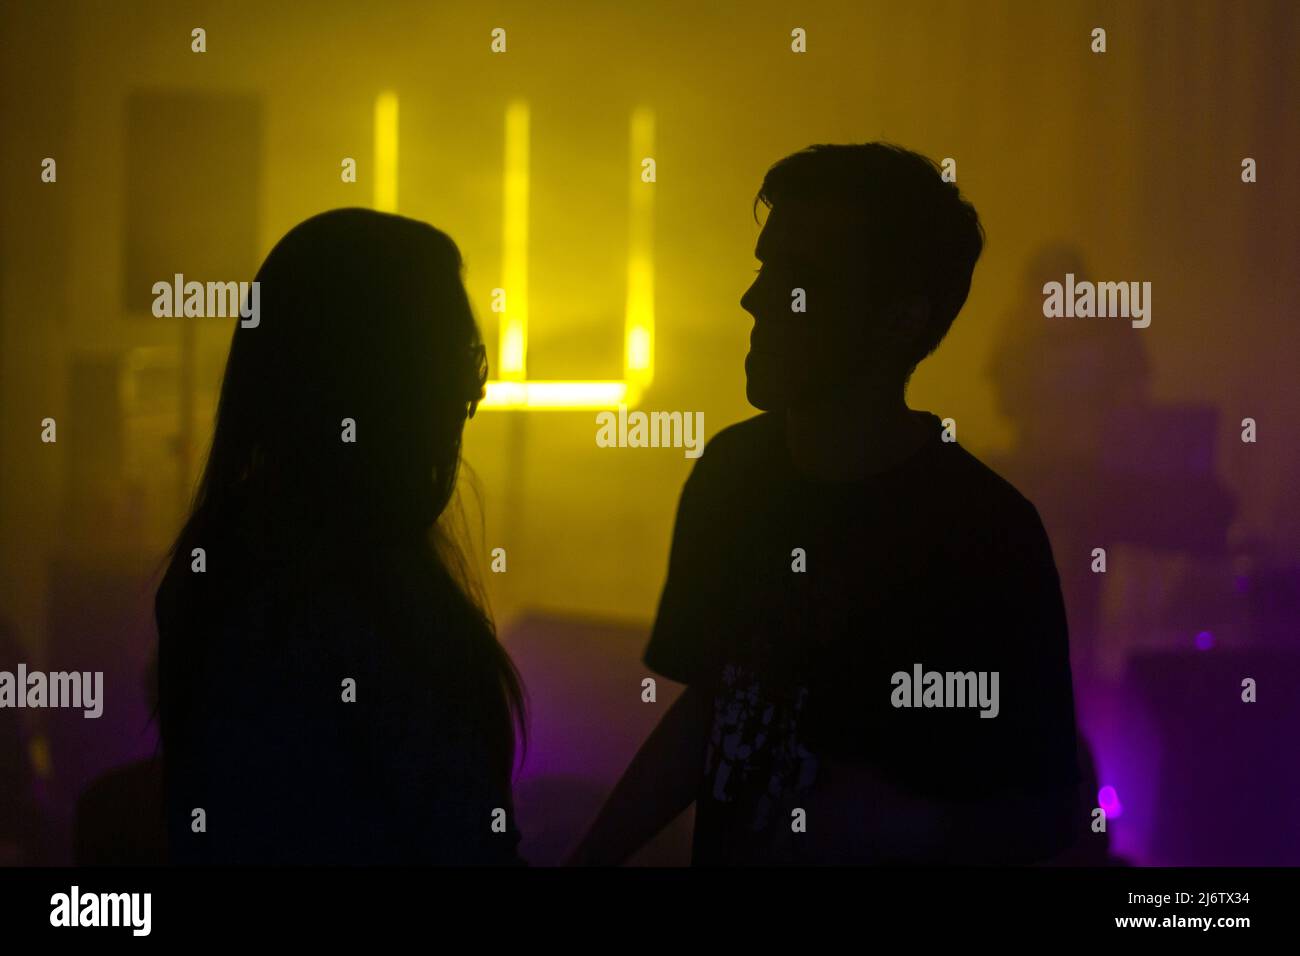 Une silhouette d'un jeune couple lors d'un concert dans une lumière ambiante sombre jaune et violette Banque D'Images